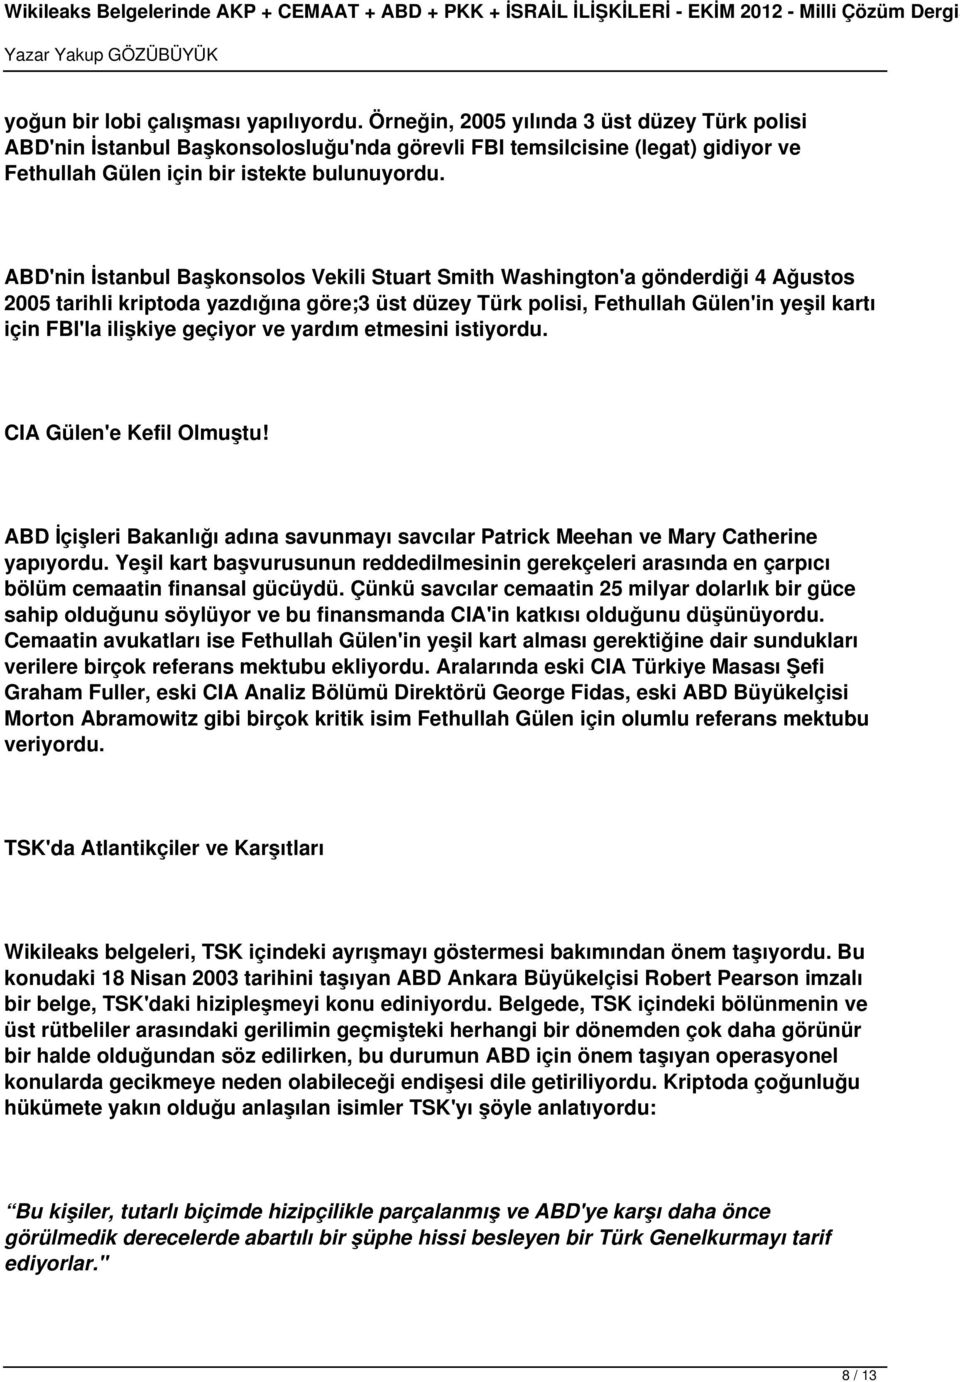 ABD'nin İstanbul Başkonsolos Vekili Stuart Smith Washington'a gönderdiği 4 Ağustos 2005 tarihli kriptoda yazdığına göre;3 üst düzey Türk polisi, Fethullah Gülen'in yeşil kartı için FBI'la ilişkiye